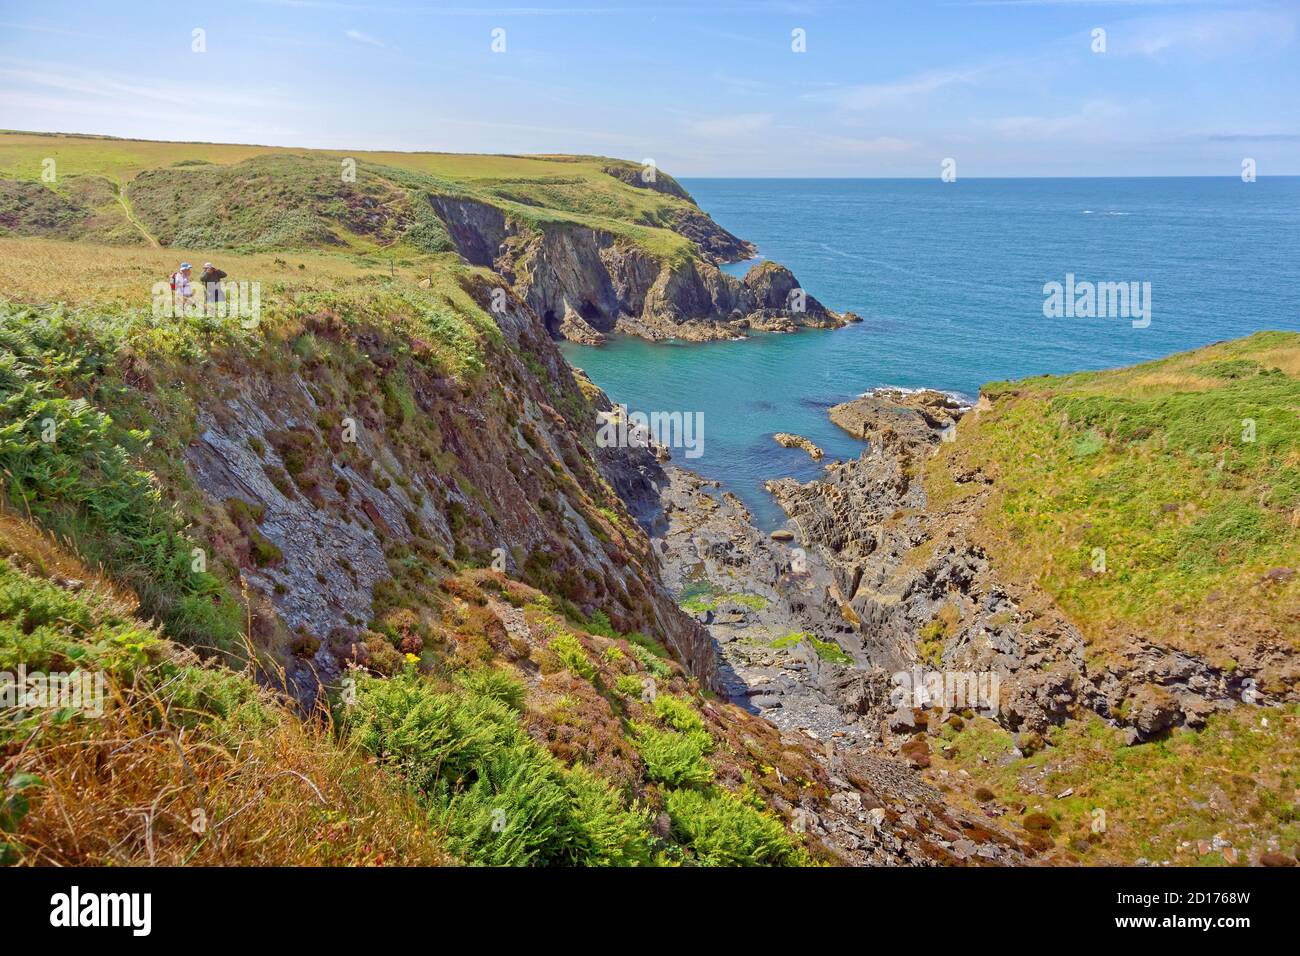 La côte de Pembrokeshire et le chemin côtier près de la ville de St David, dans le nord de Pembrokeshire, au pays de Galles. Banque D'Images